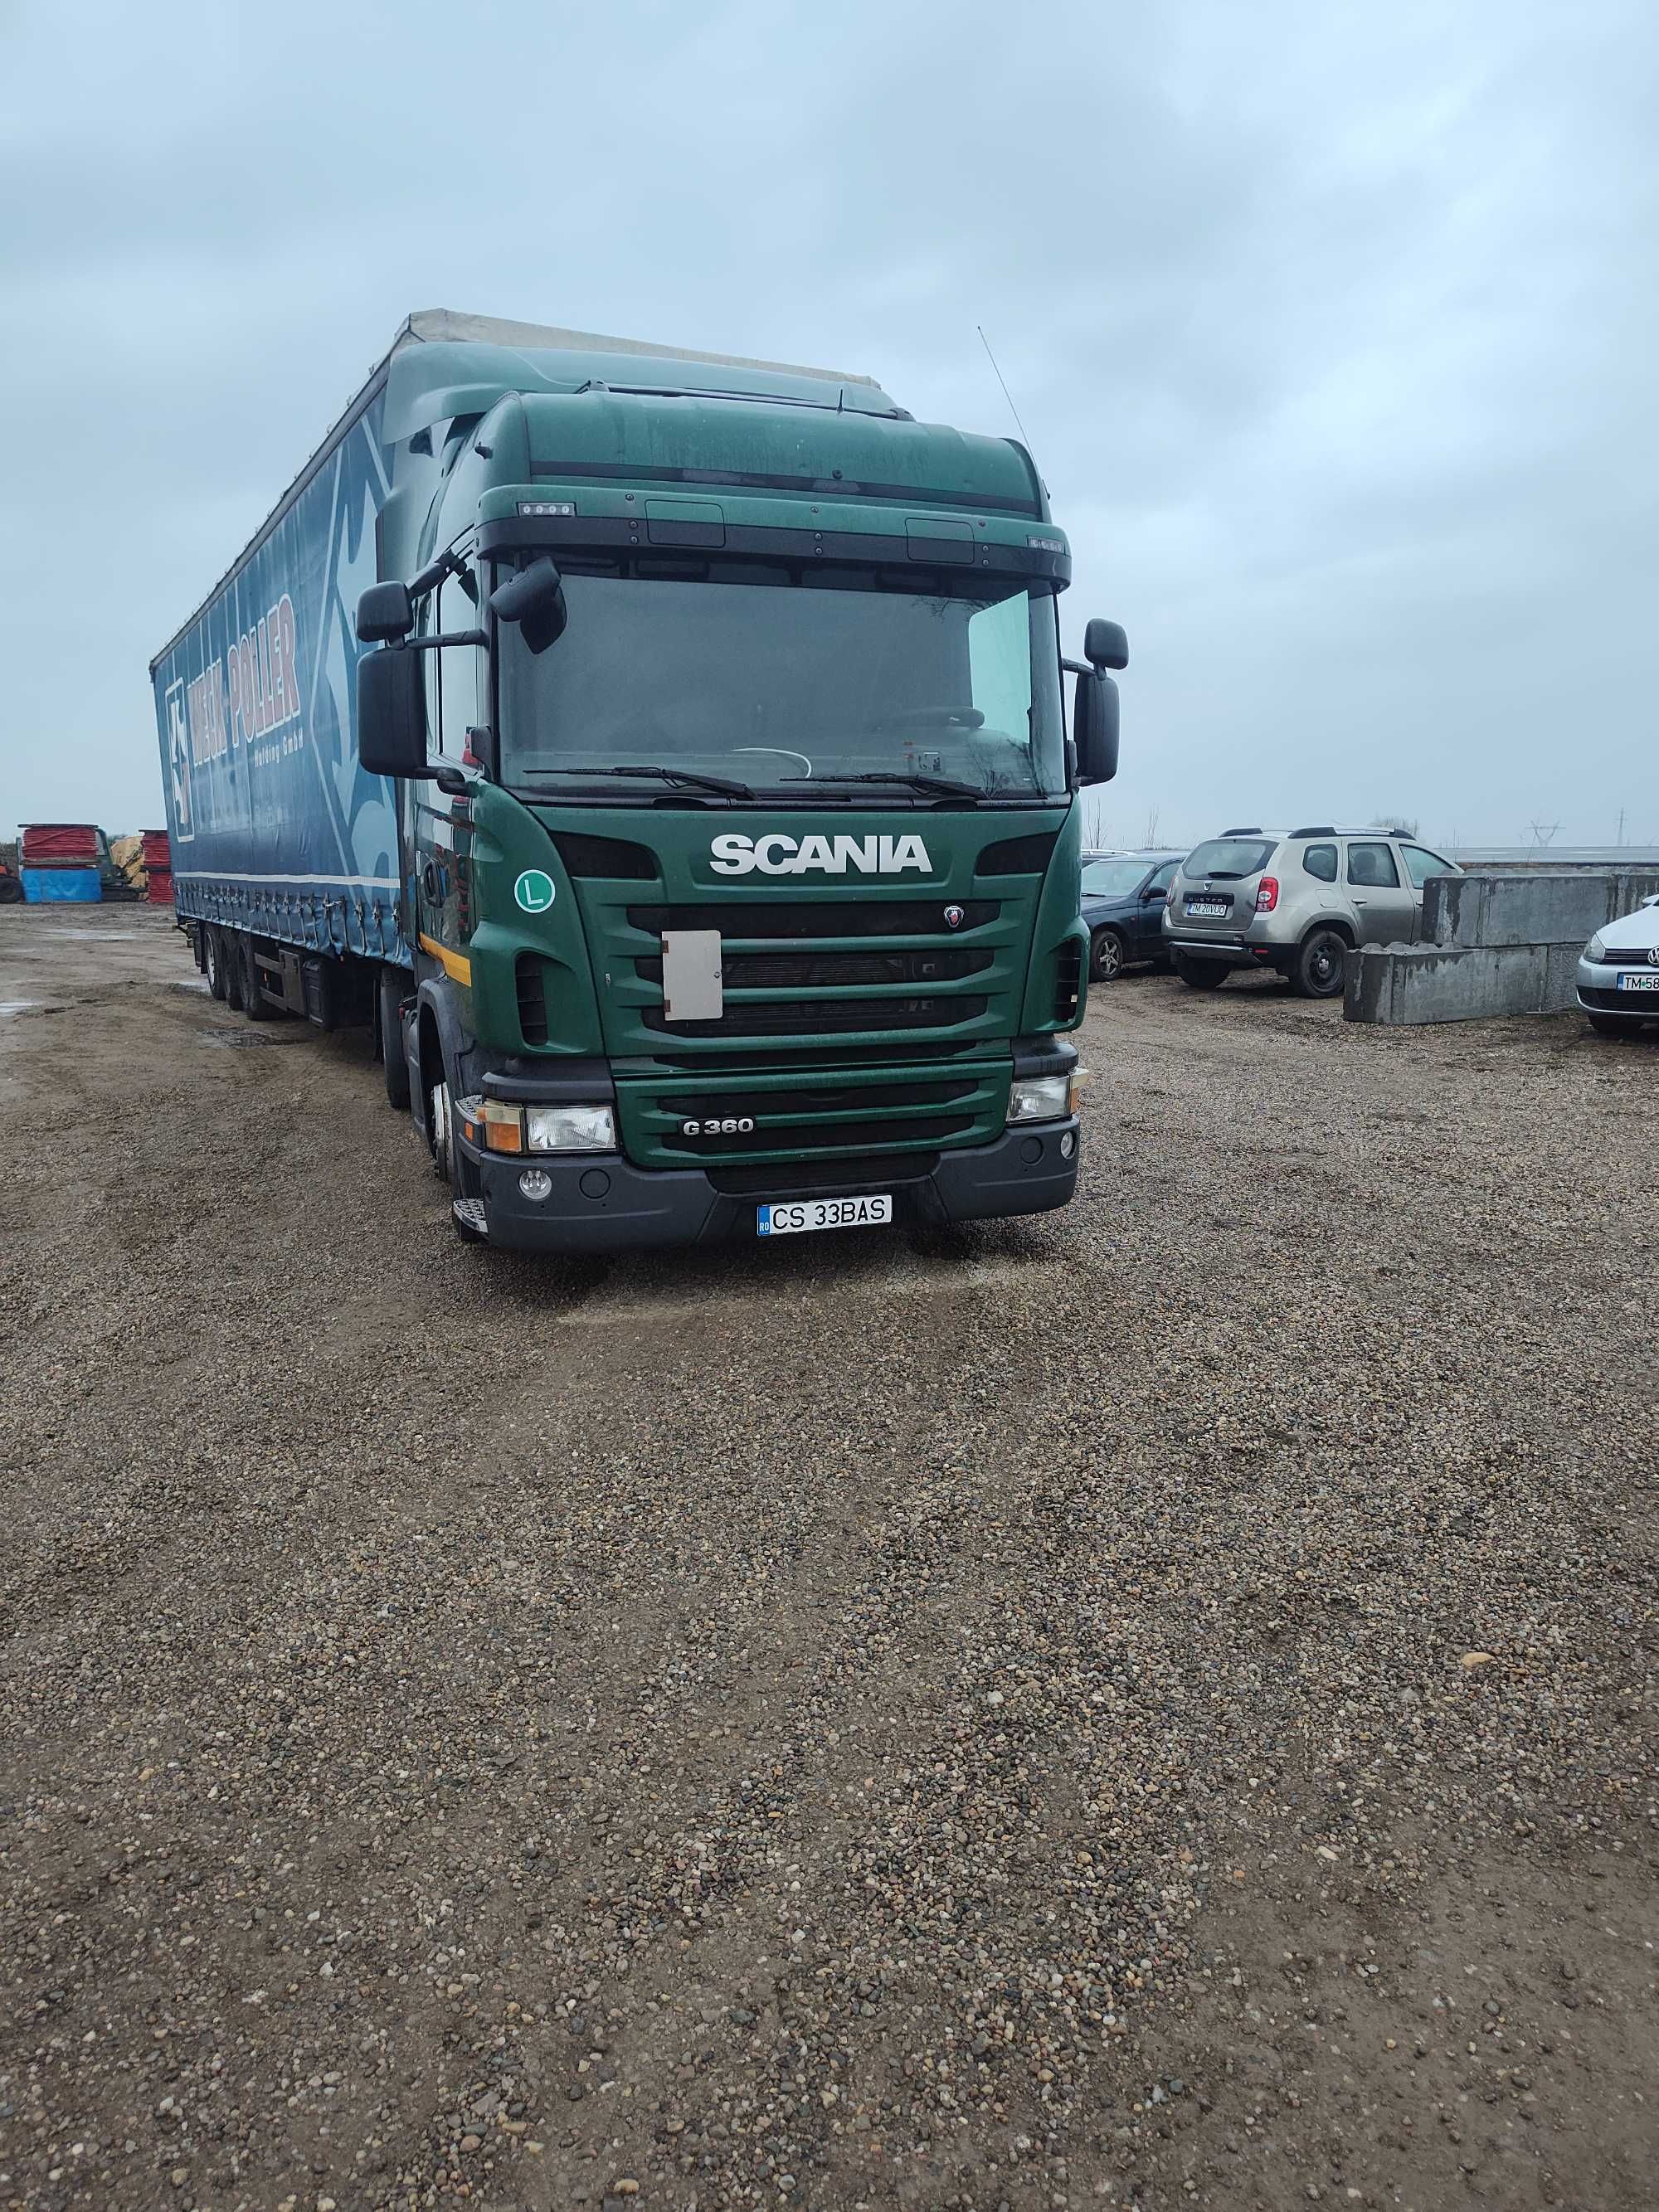 Scania g360 euro 5